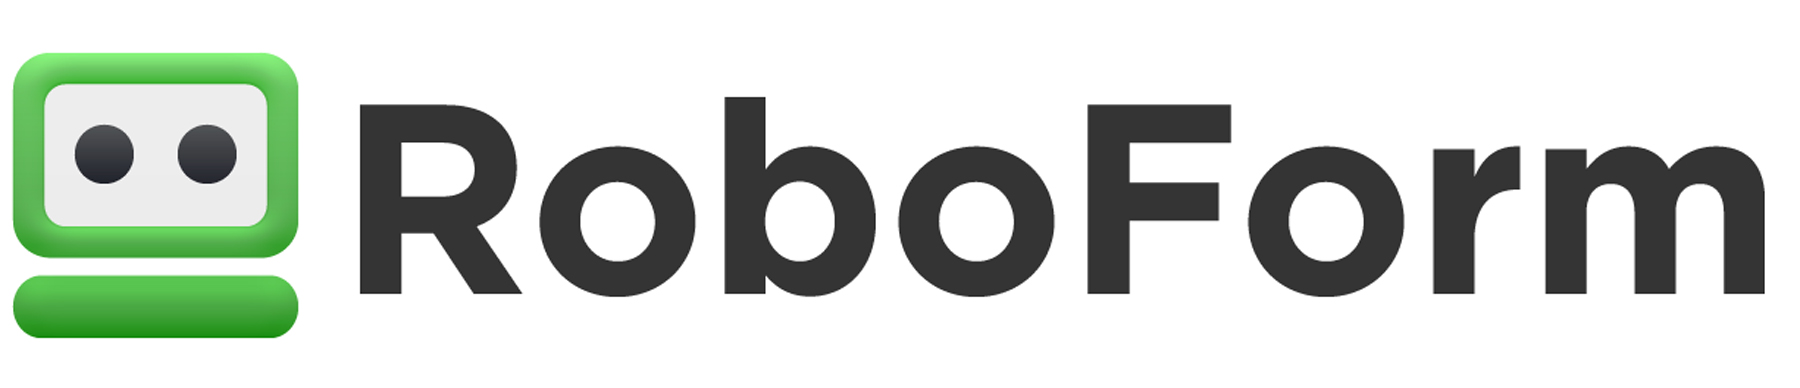 roboform app